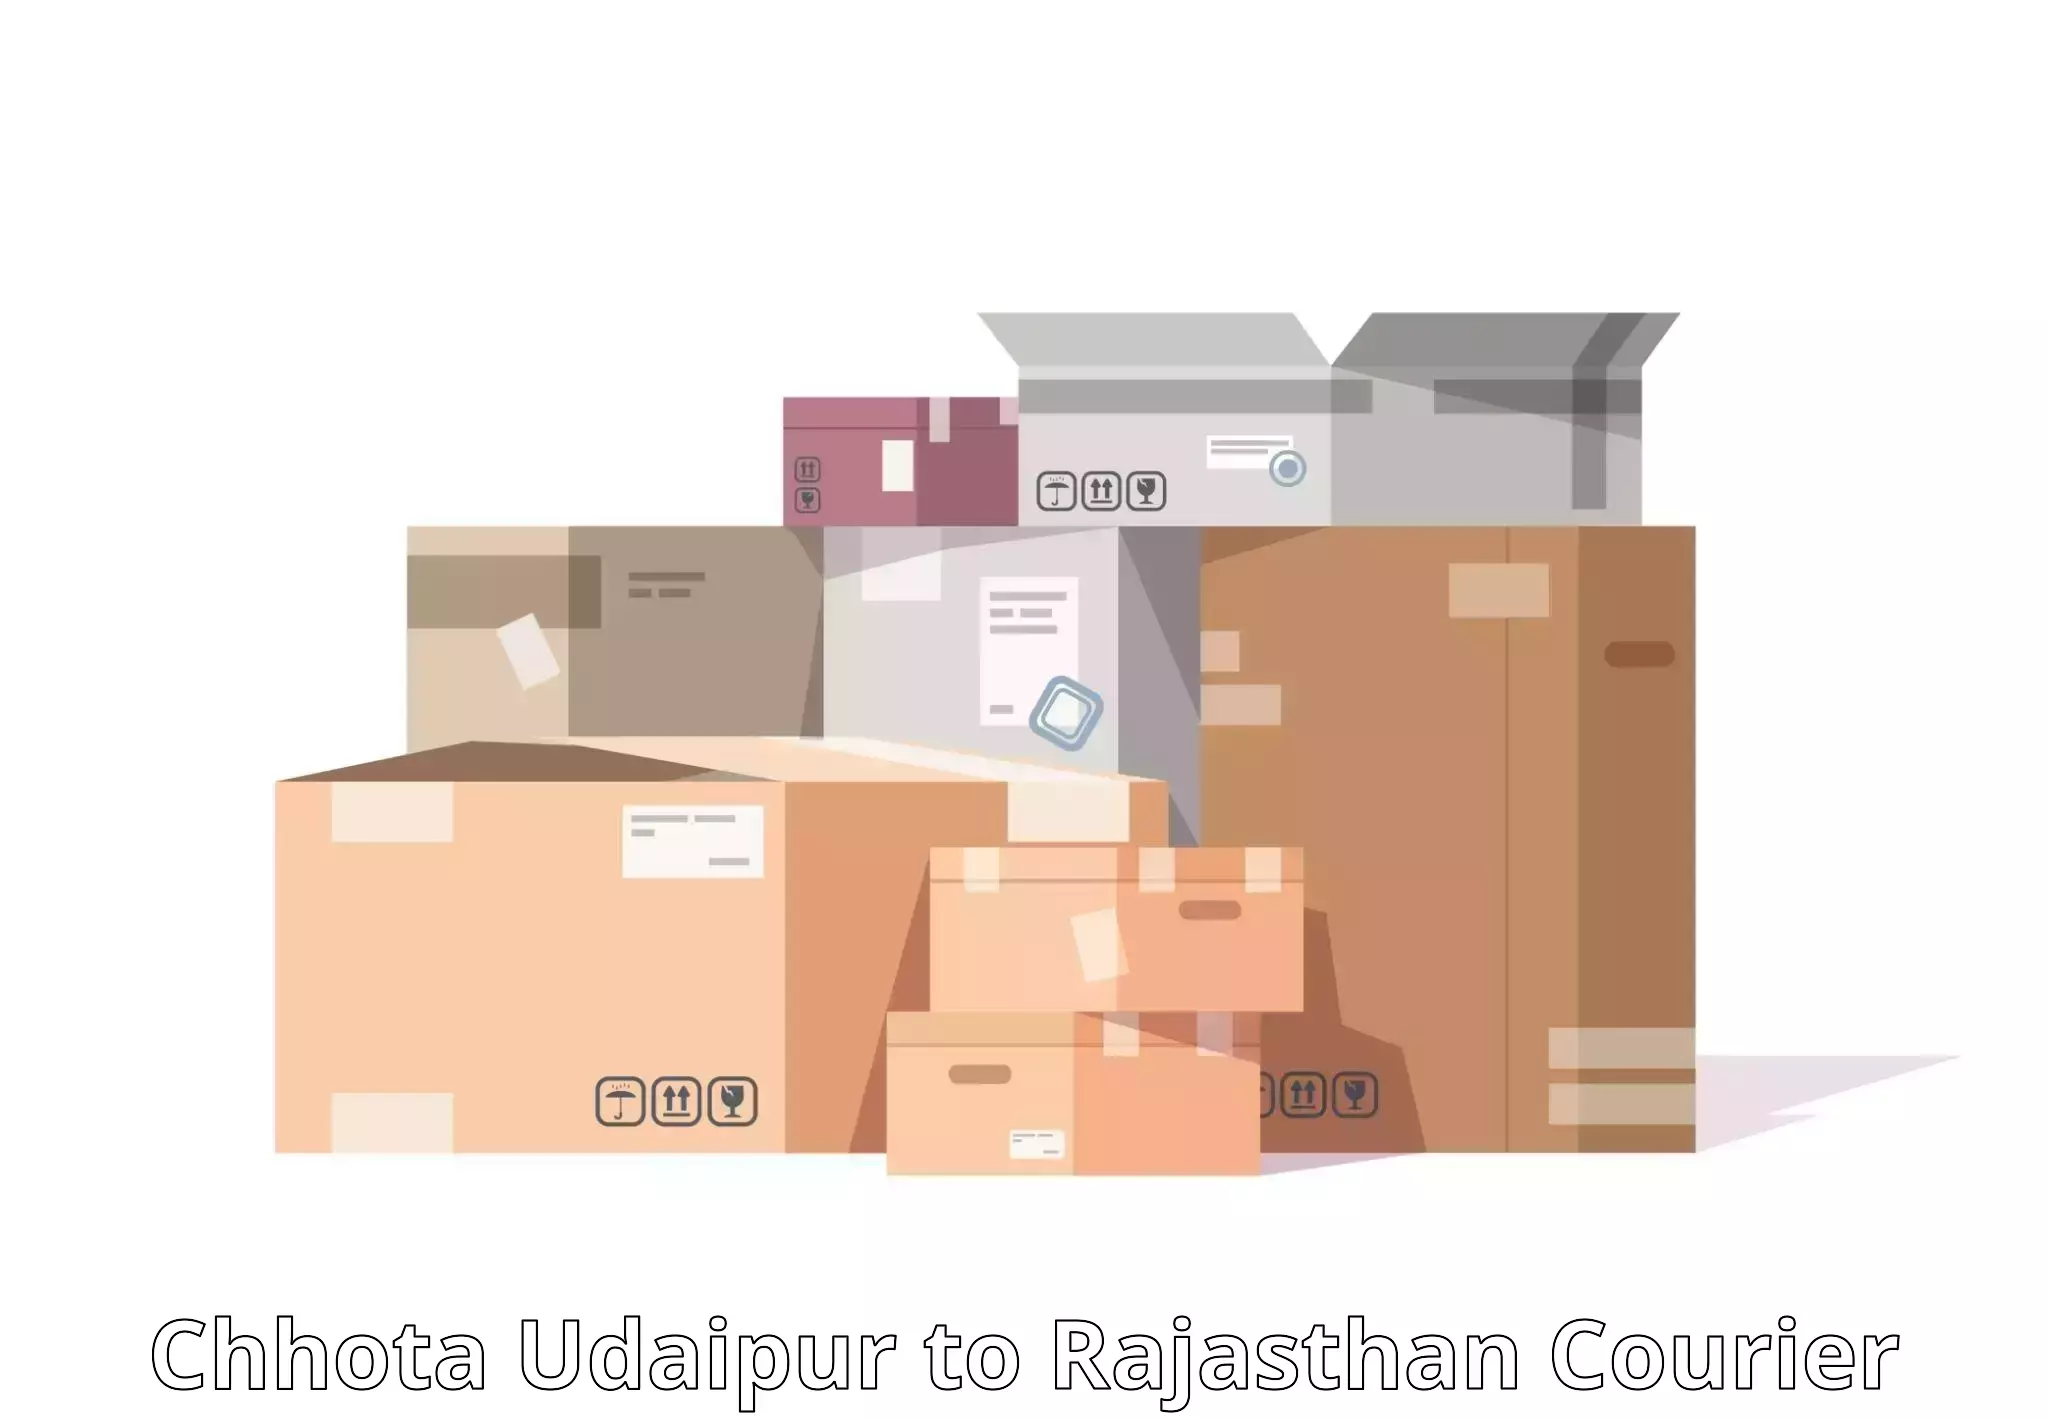 High-efficiency logistics Chhota Udaipur to Gogunda